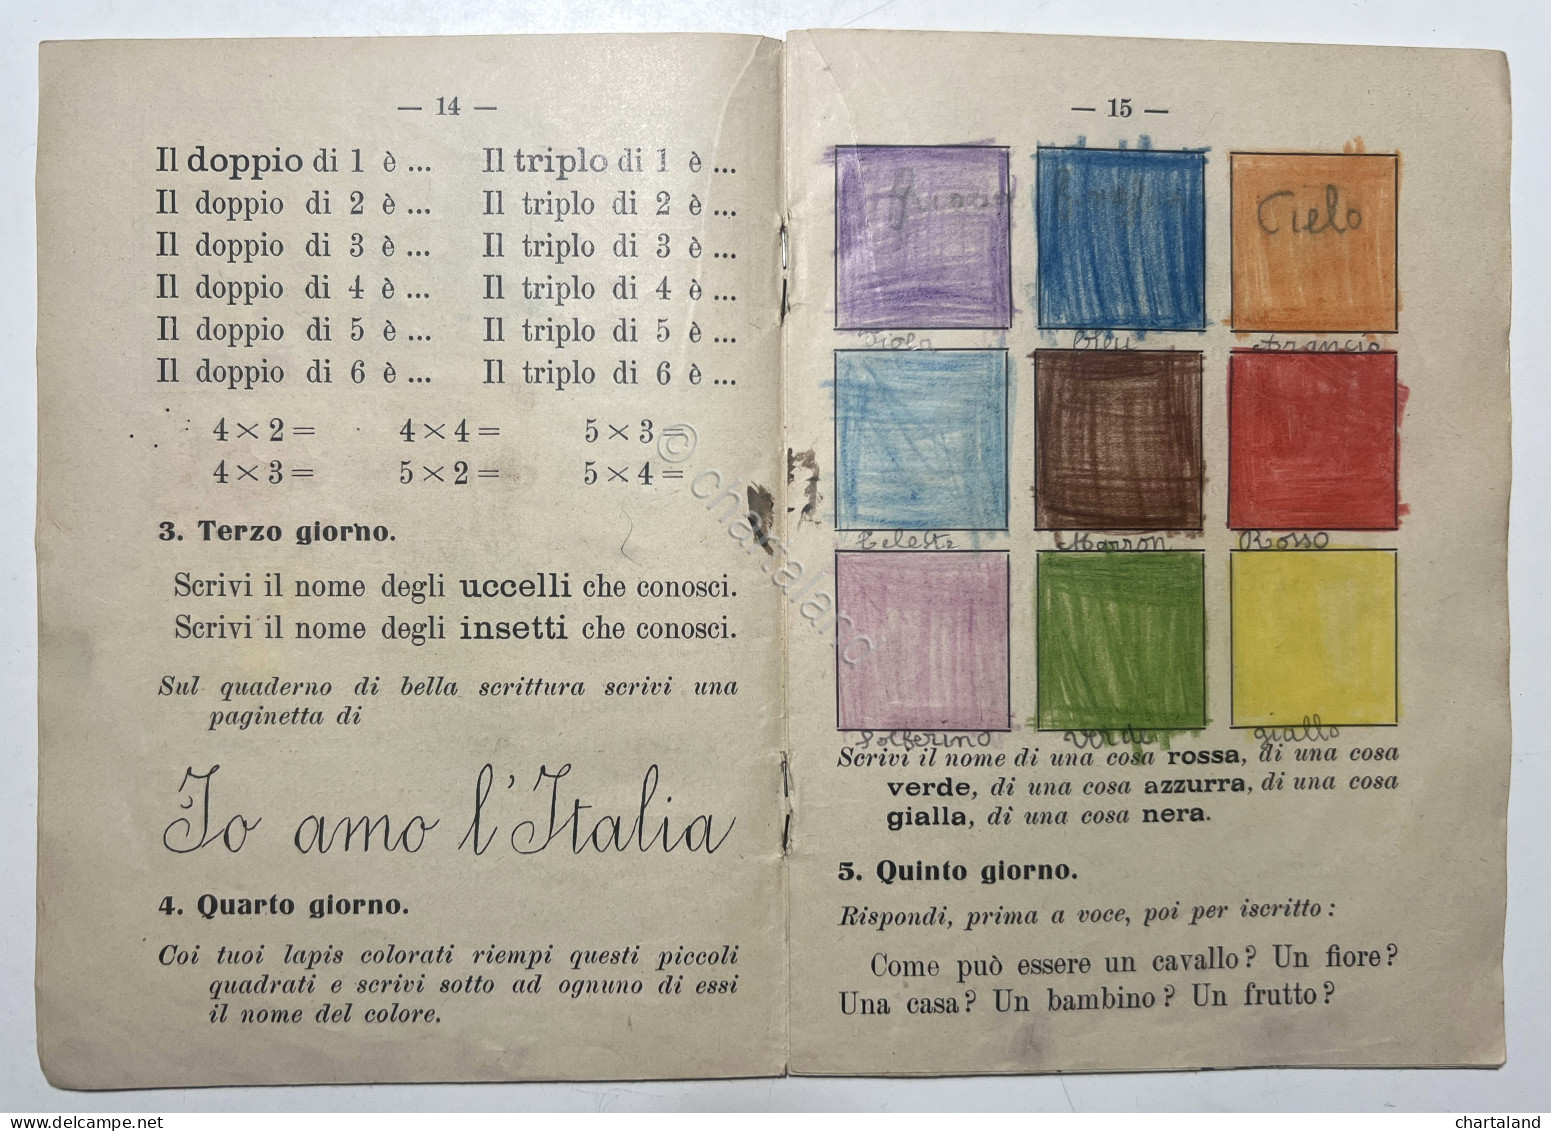 Libri Ragazzi - A. Plata - Compiti Per Le Vacanze: Classe Prima - Ed. 1933 - Otros & Sin Clasificación